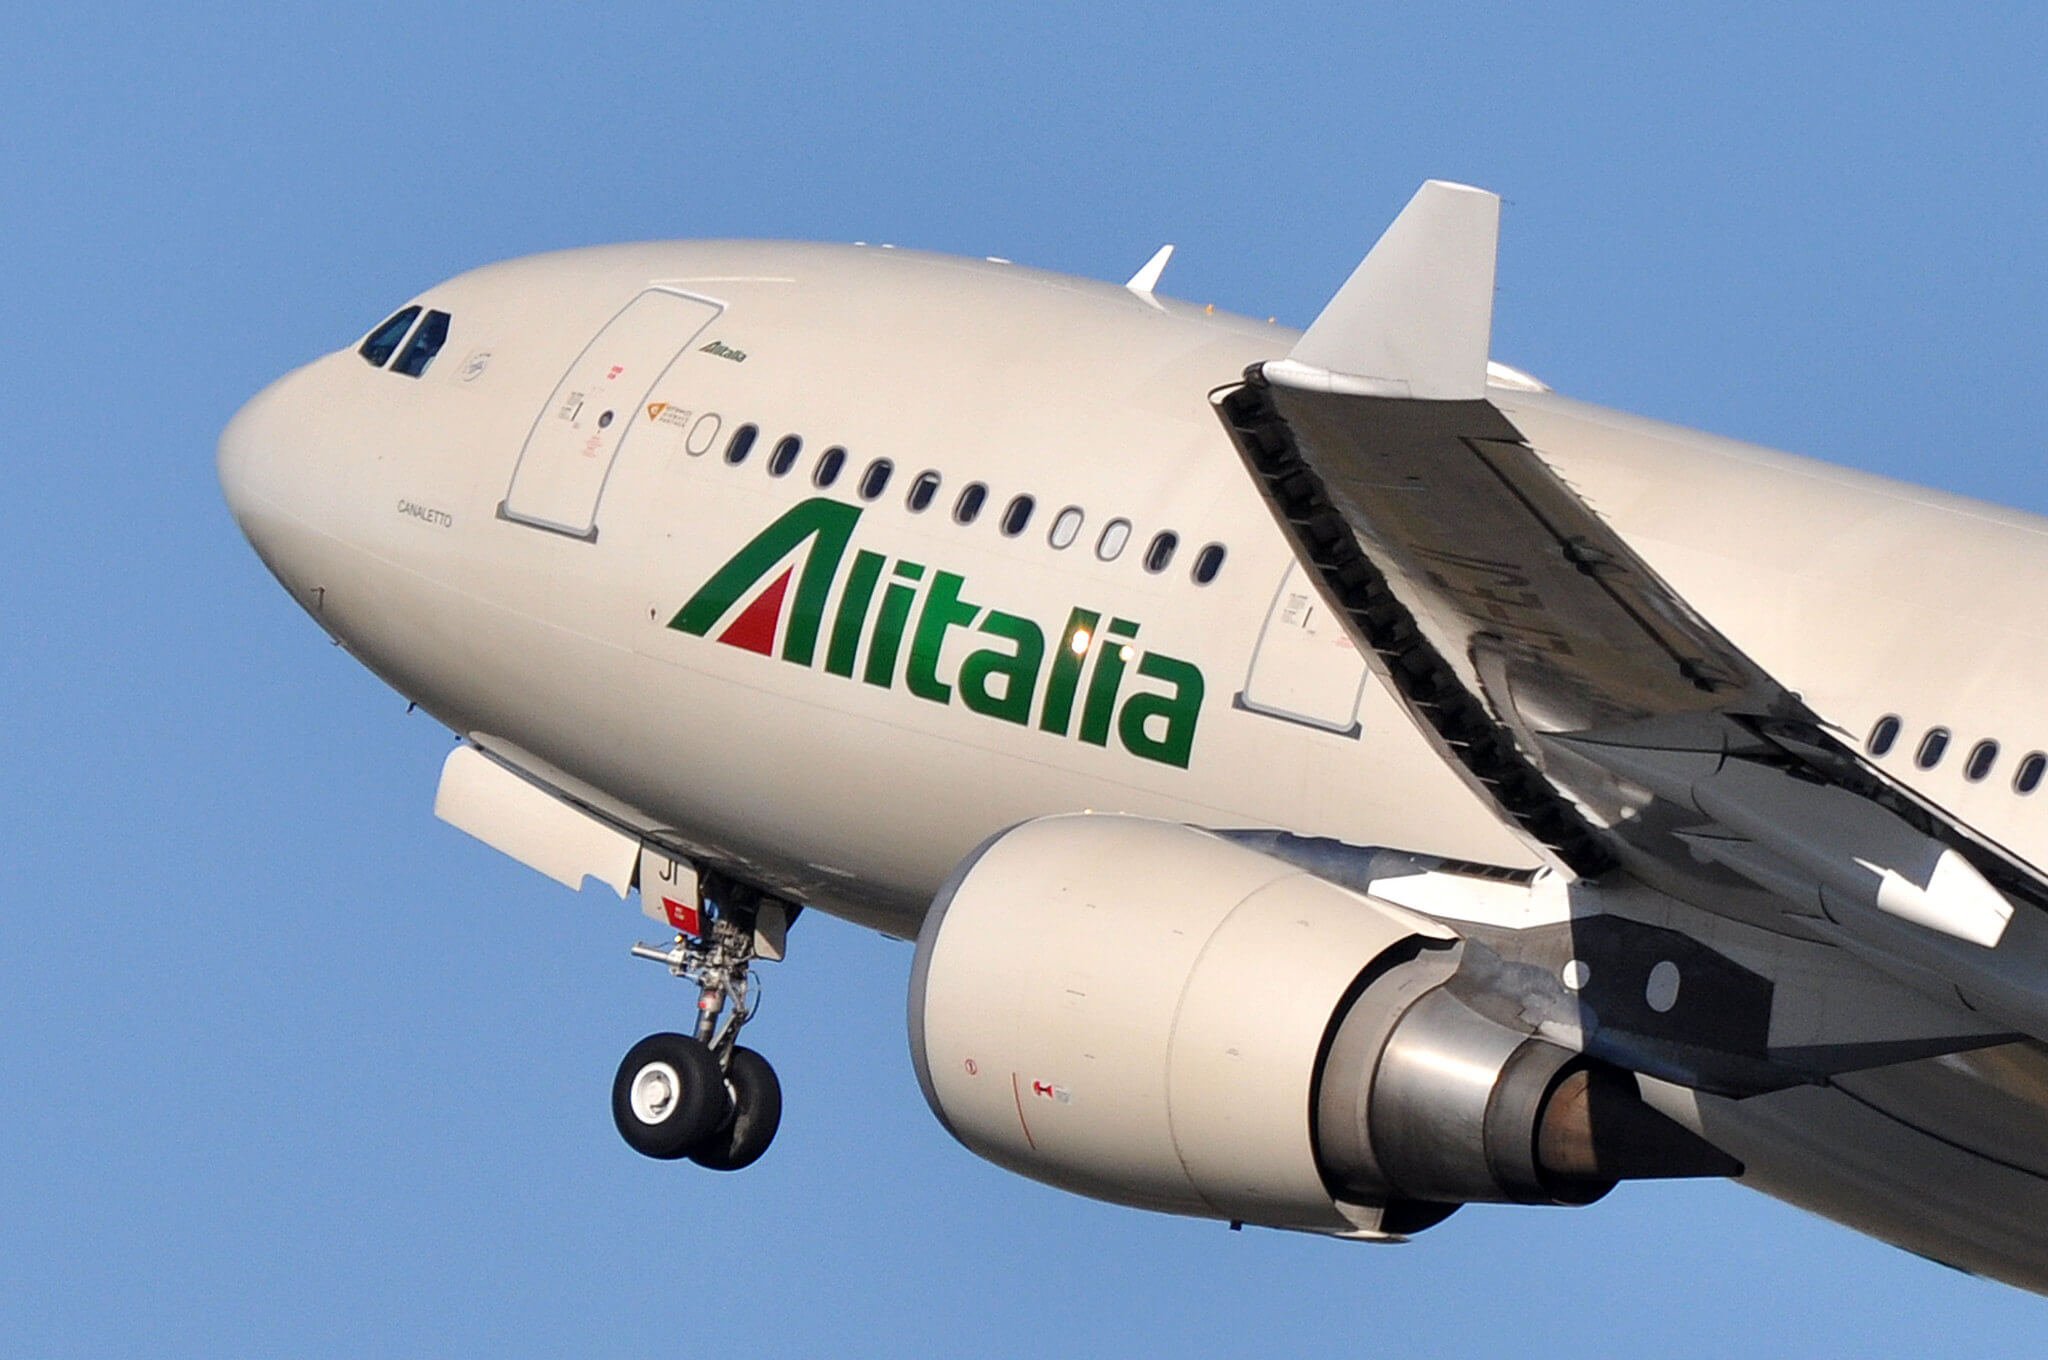 "Alitalia"